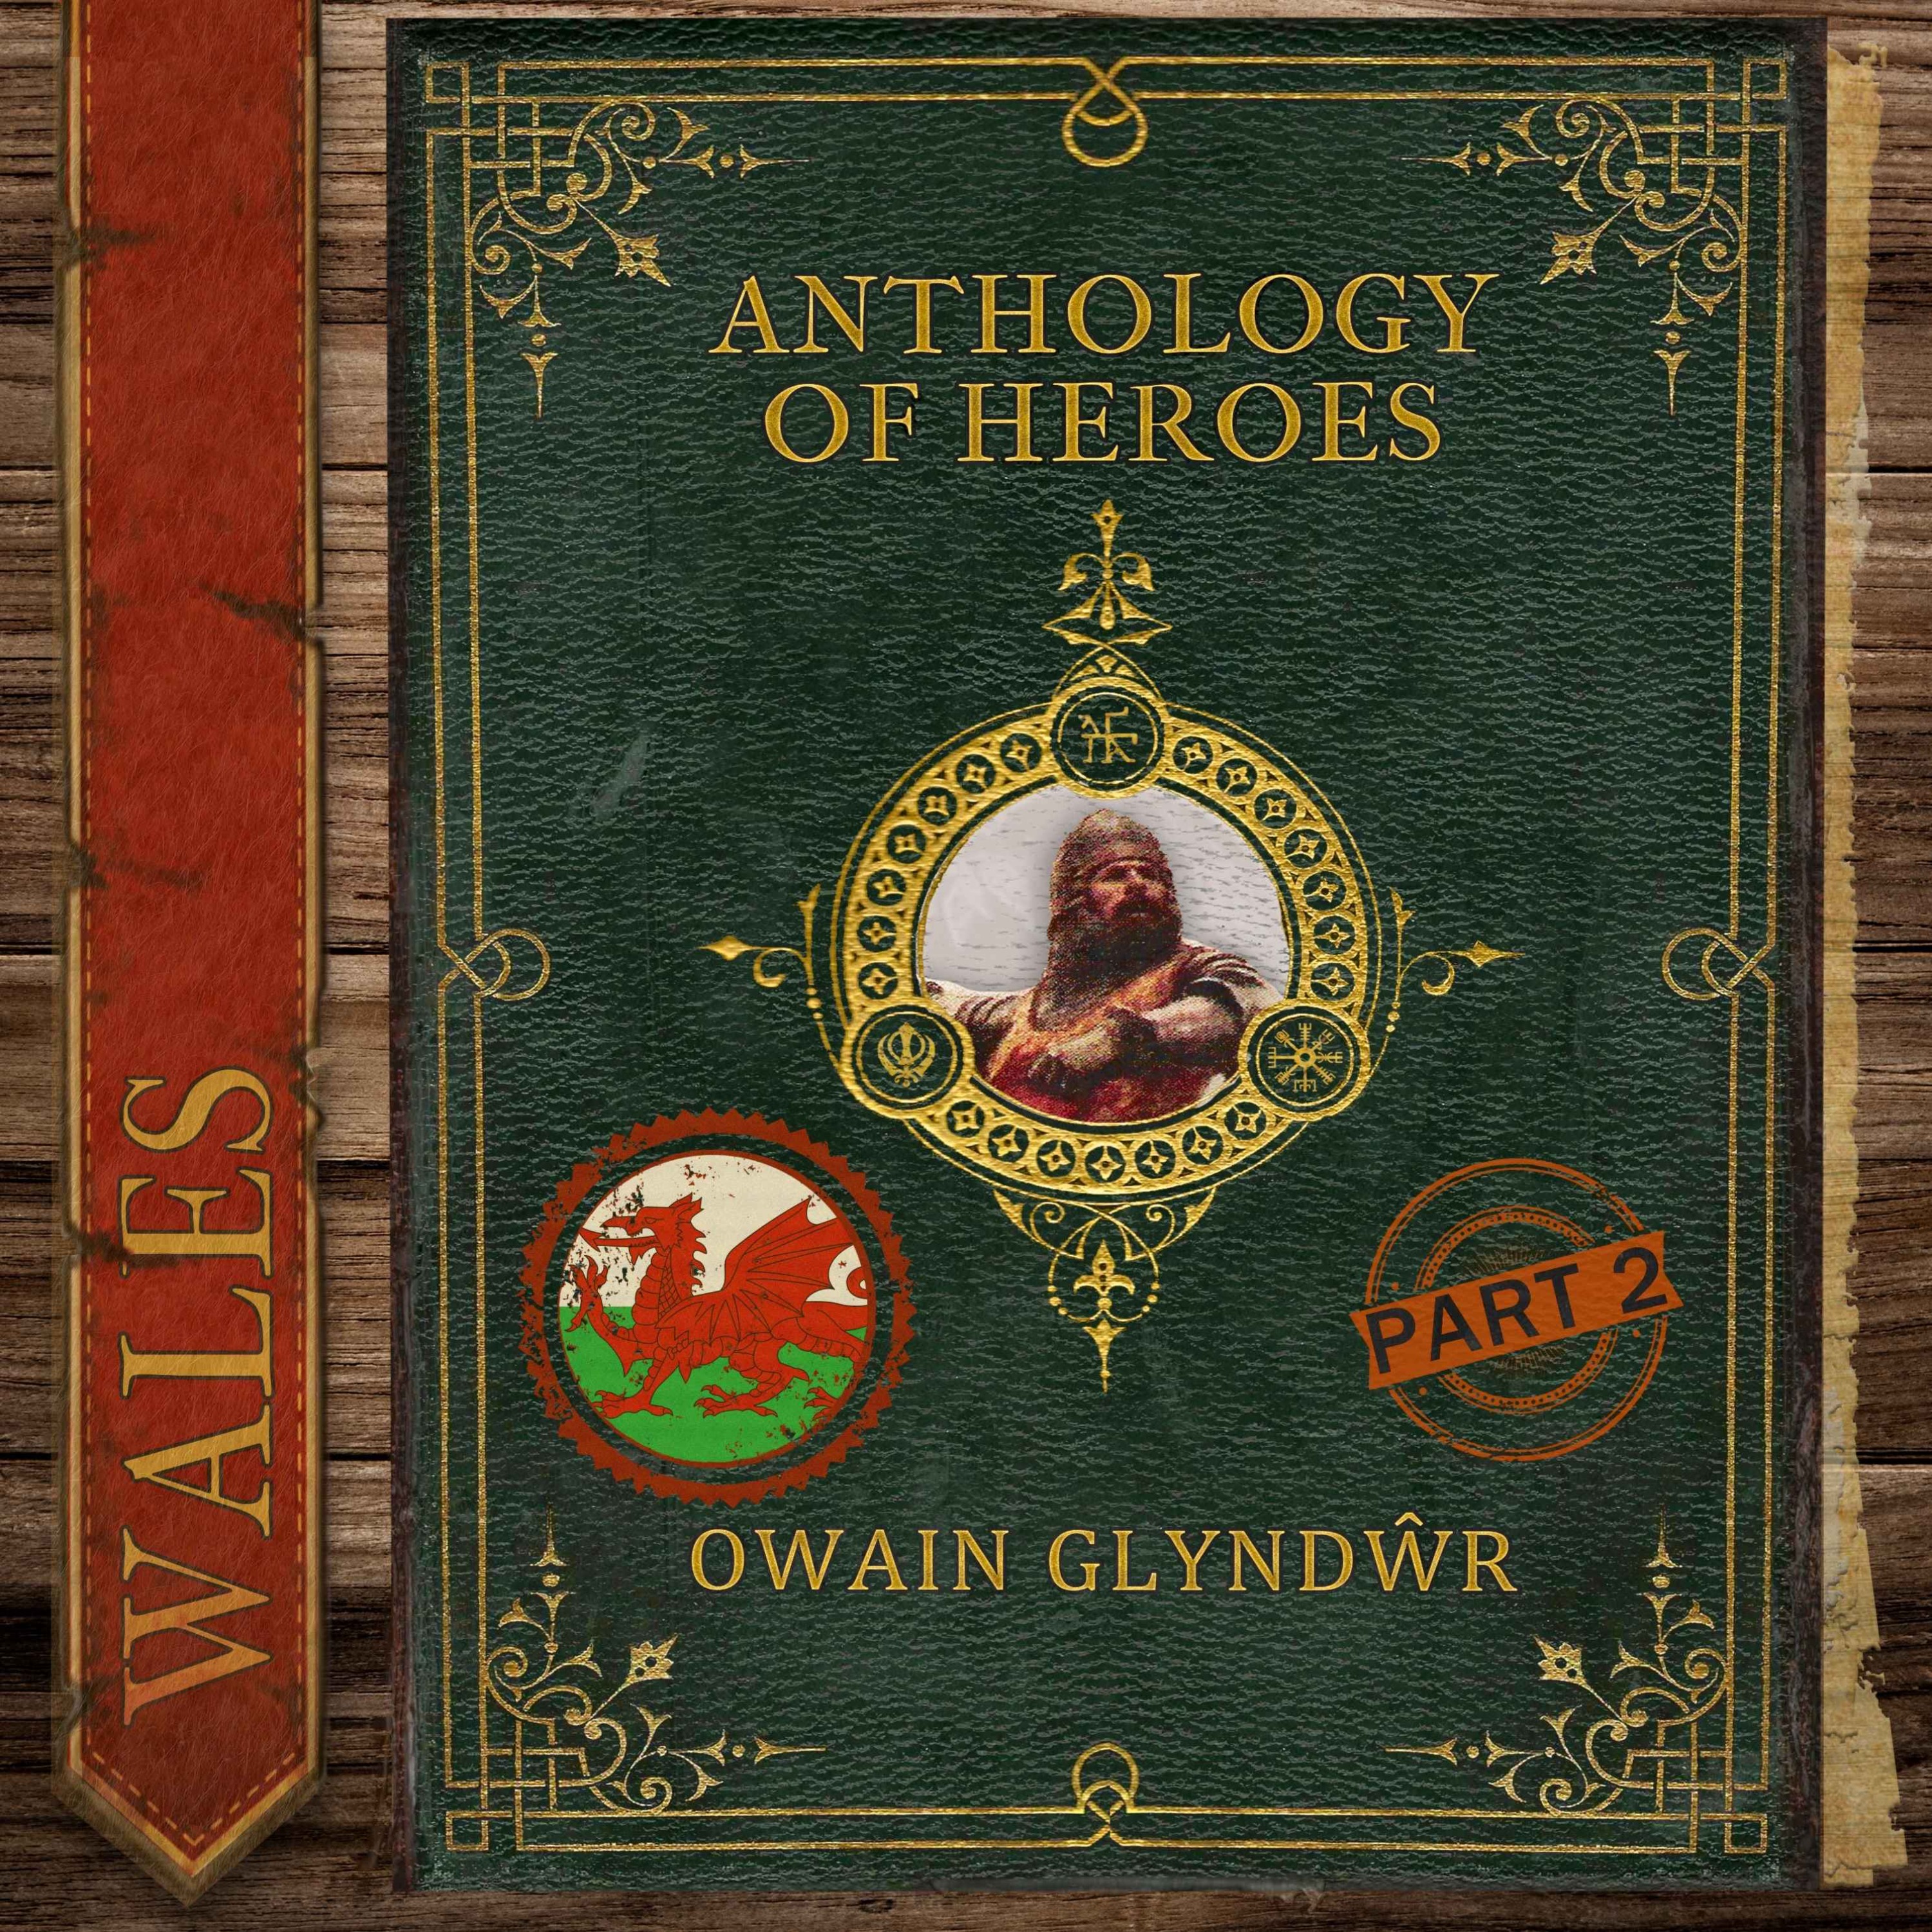 Owain Glyndŵr, The Last Prince of Wales (Part 2)